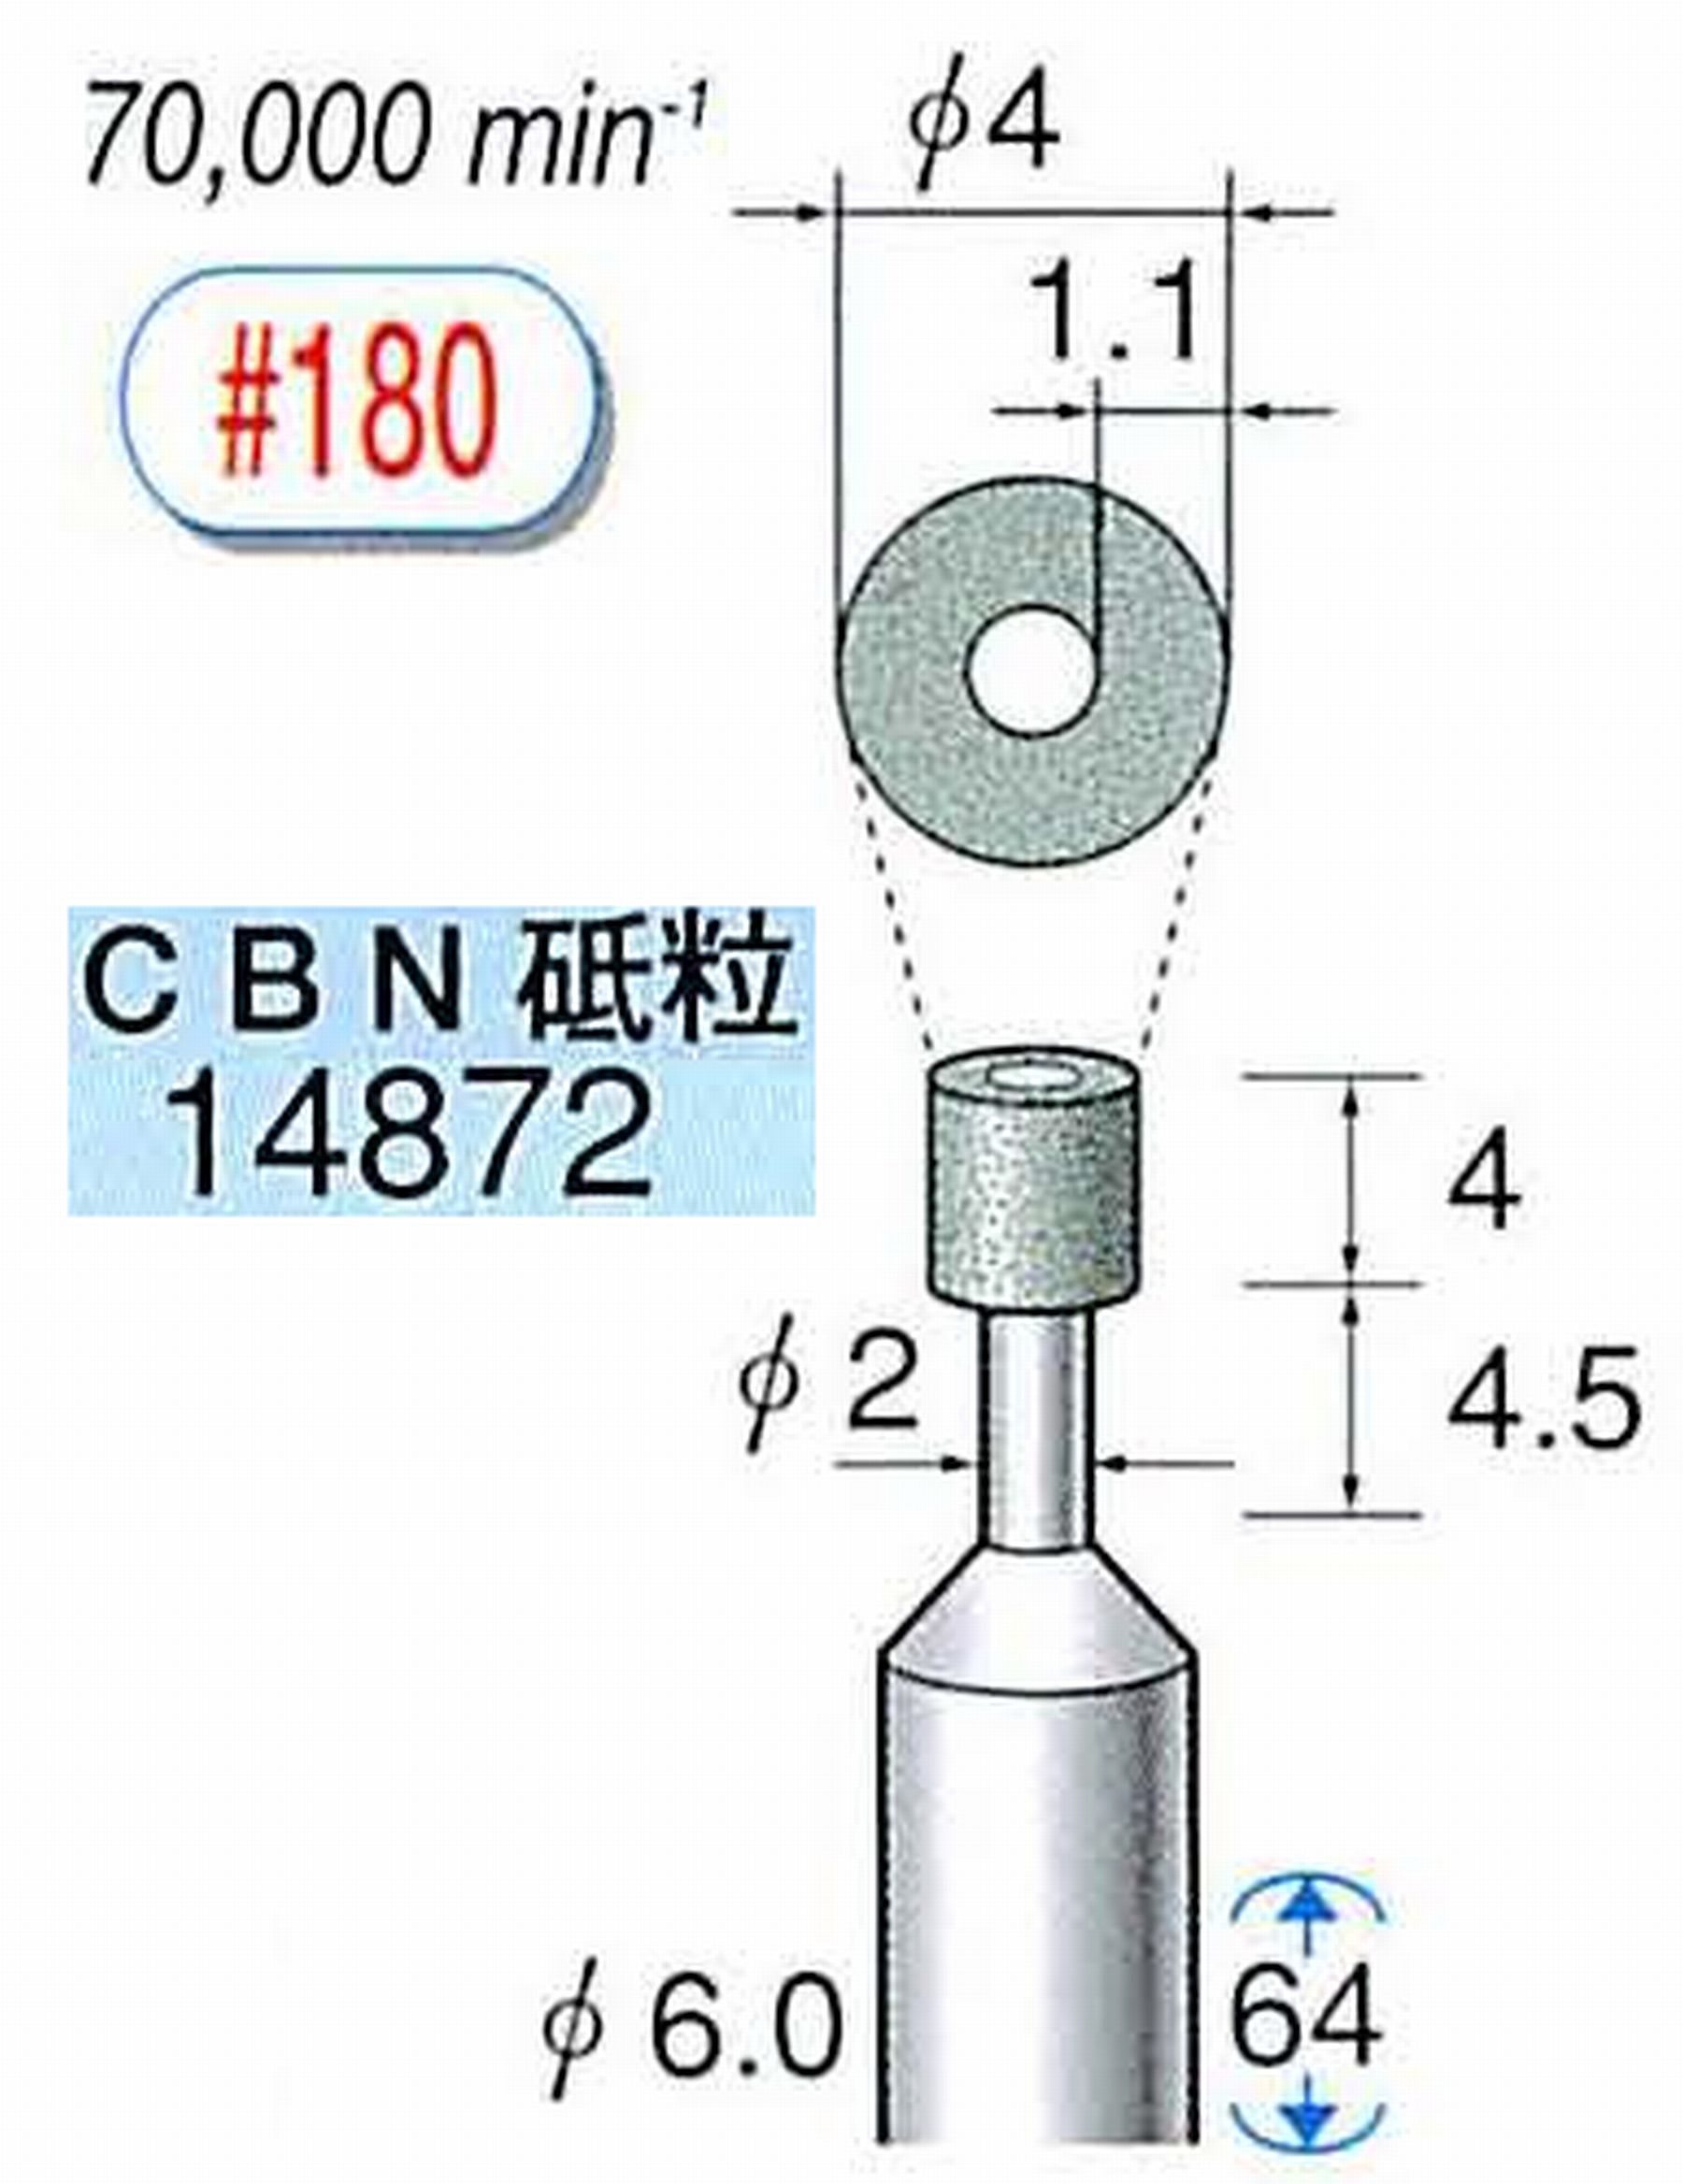 ナカニシ/NAKANISHI ビトリファイドダイヤモンド砥石 CBN砥粒 軸径(シャンク)φ6.0mm 14872